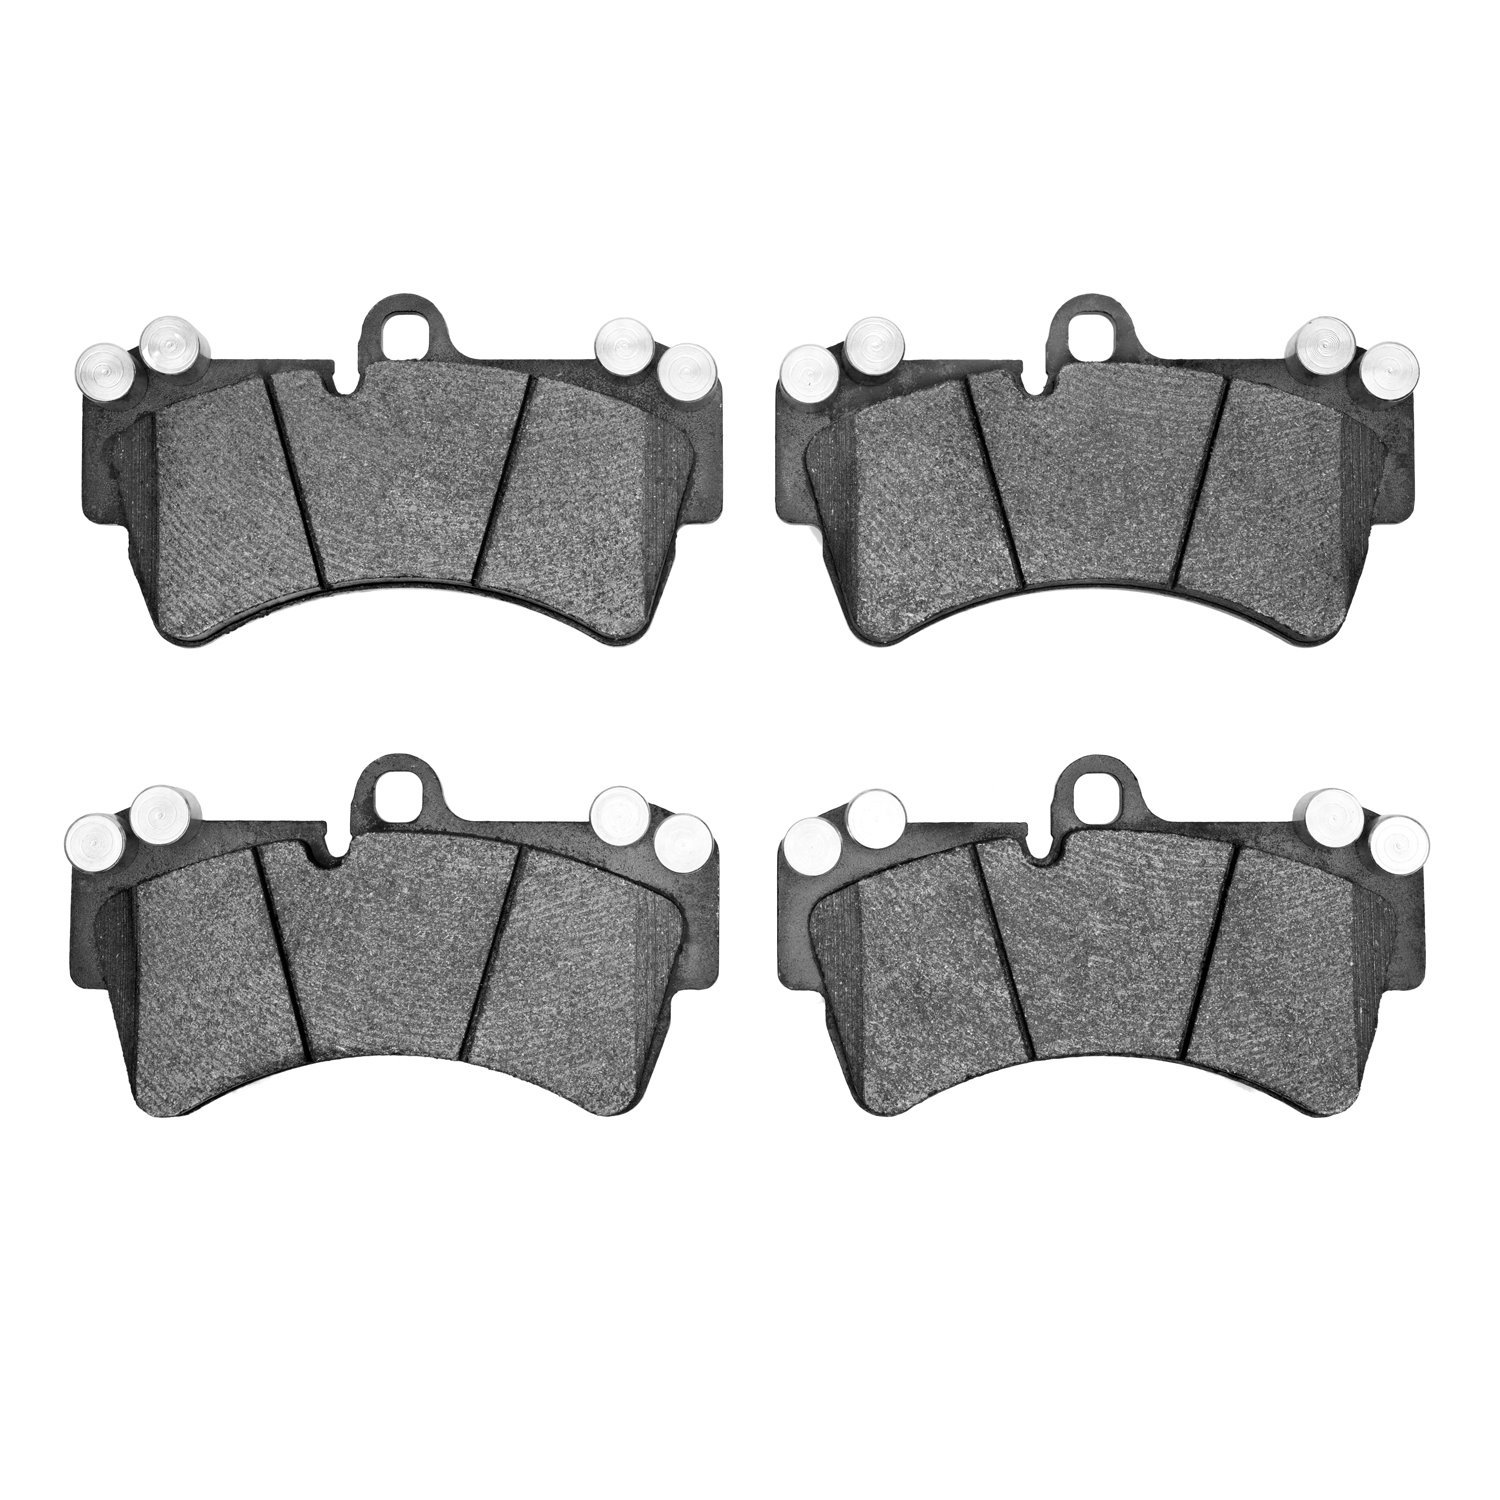 5000 Advanced Low-Metallic Brake Pads, 2003-2015 Multiple